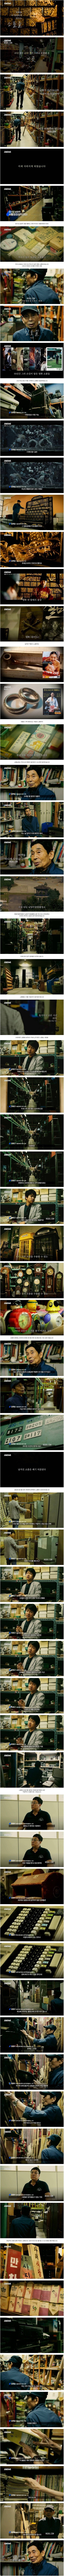 전부 폐기 처분 위기에 놓여있는 한국영화 속 소품들.JPG | 인스티즈